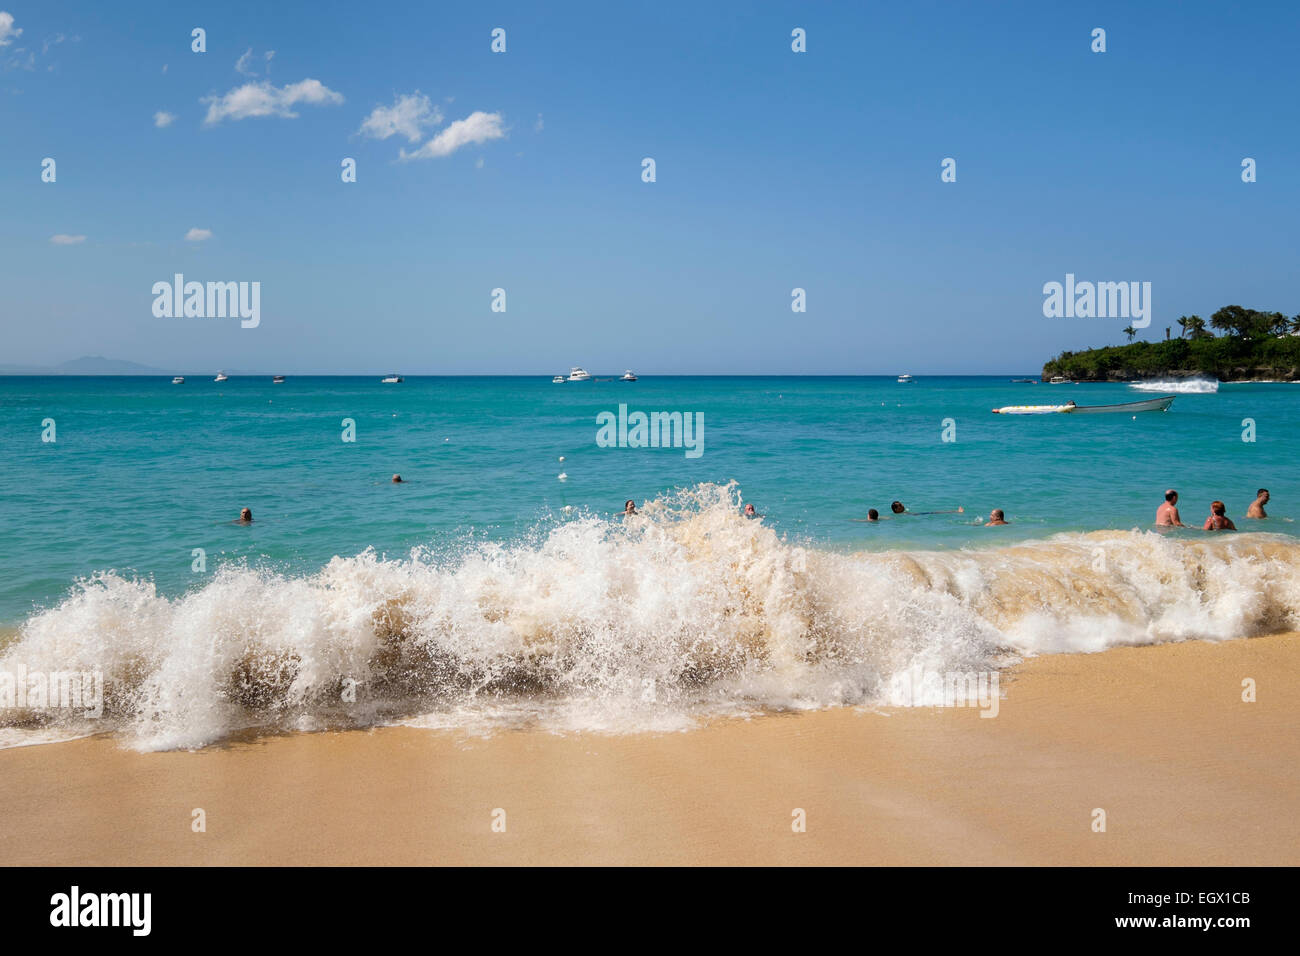 Per i turisti e la gente del posto il nuoto in oceano Atlantico onde nella località di villeggiatura di Sosua, Repubblica Dominicana, Isole dei Caraibi Foto Stock